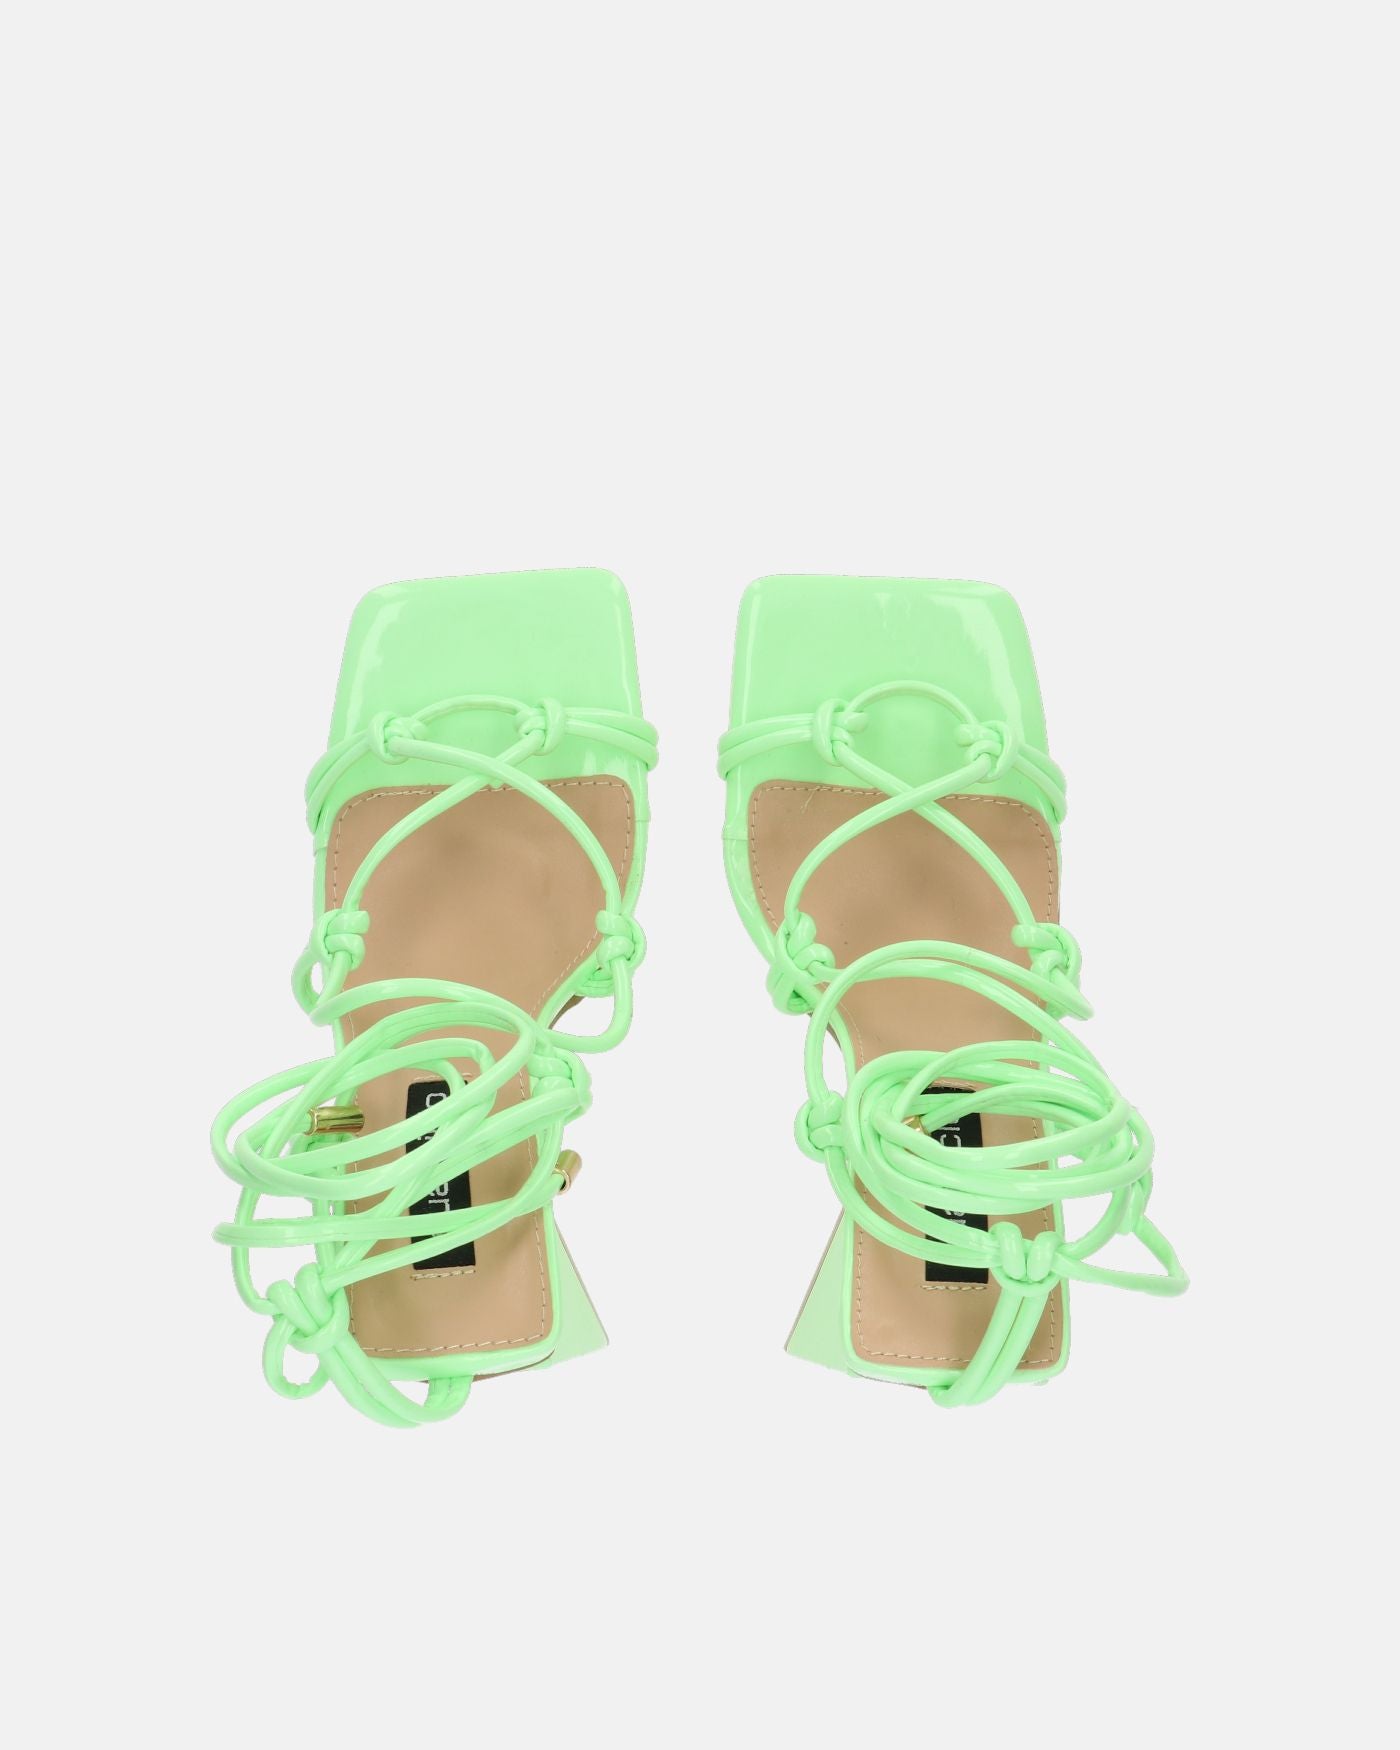 NURAY - sandali con tacco alto in glassy verde con lacci